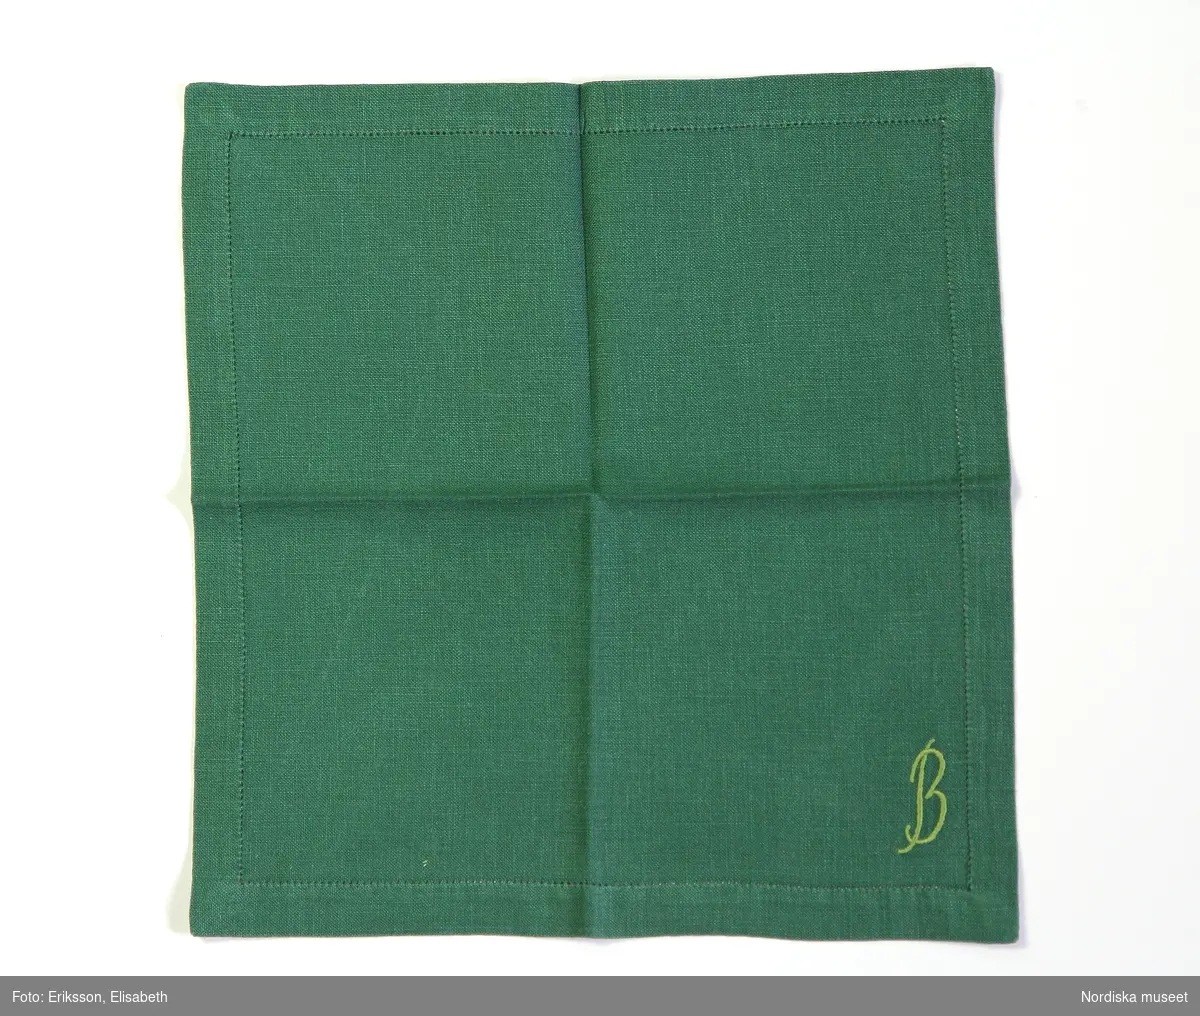 Servett av grönt linne med monogram B broderat i ljusgrön plattsöm.